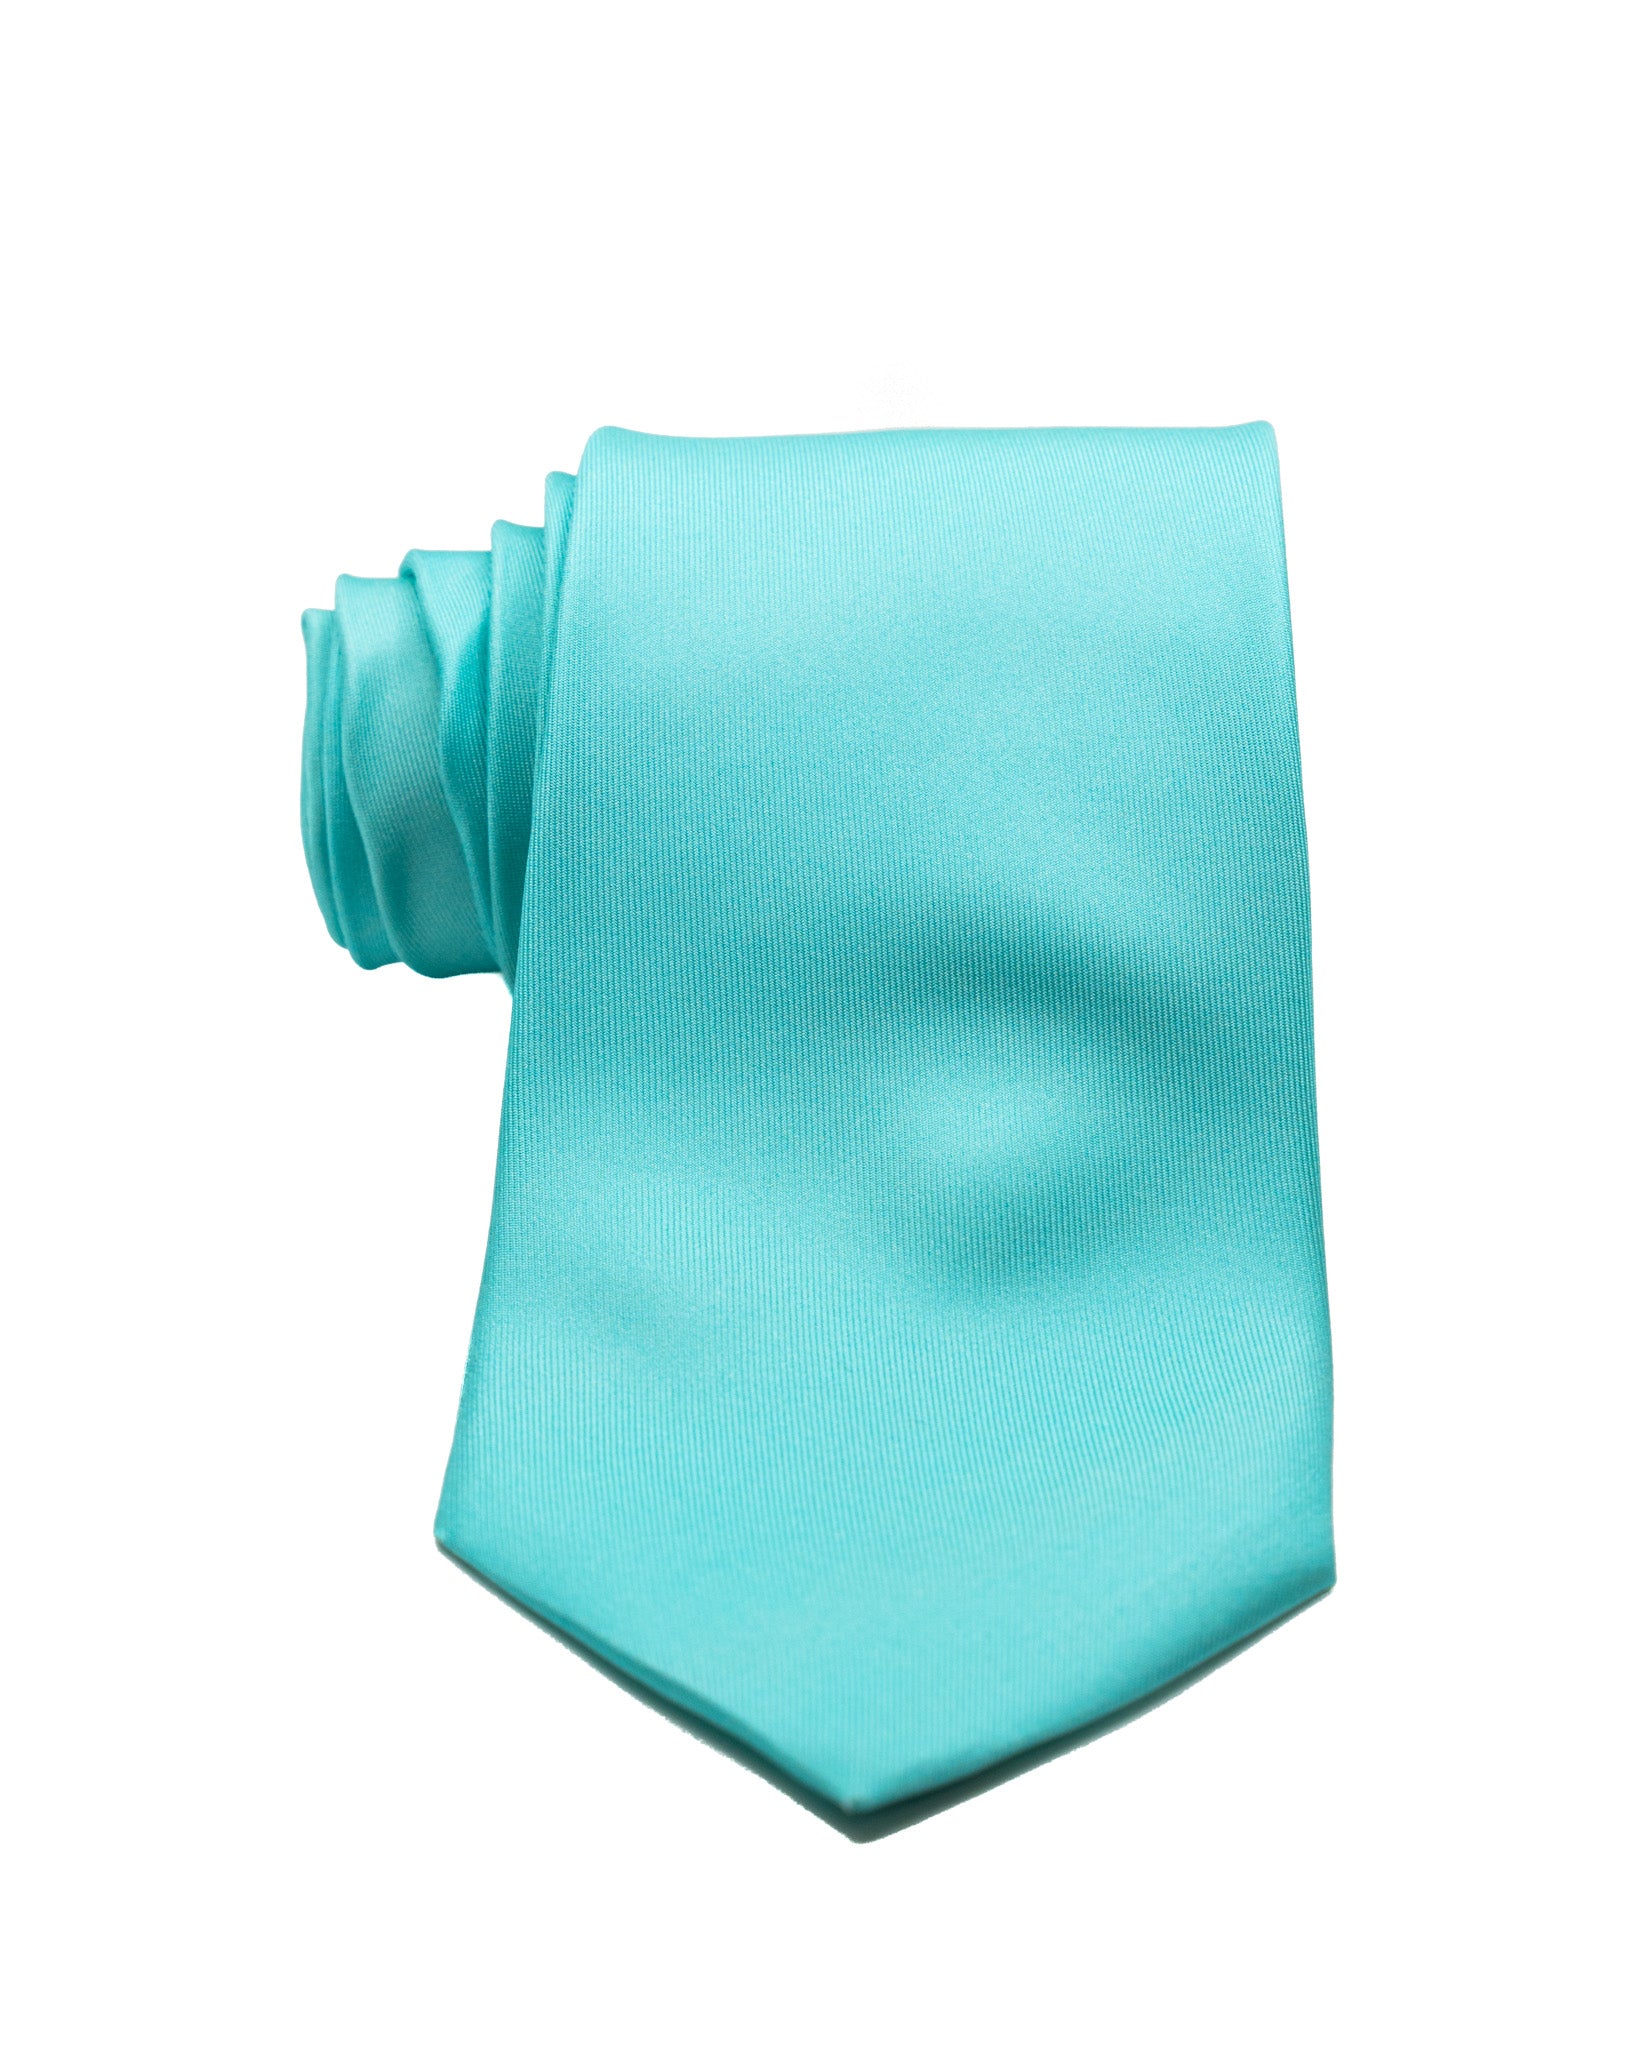 Cravate - en soie tissée turquoise